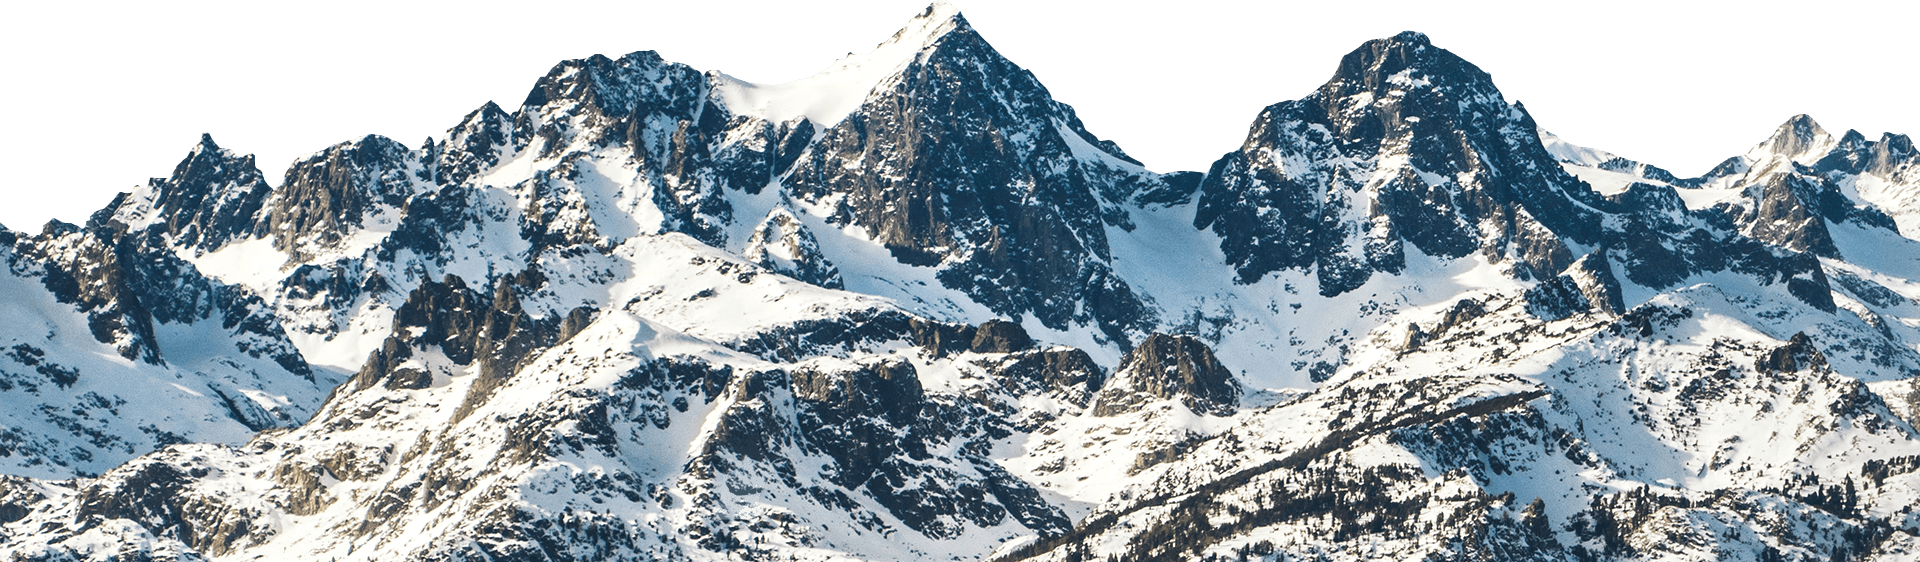 Mountain Ridge background